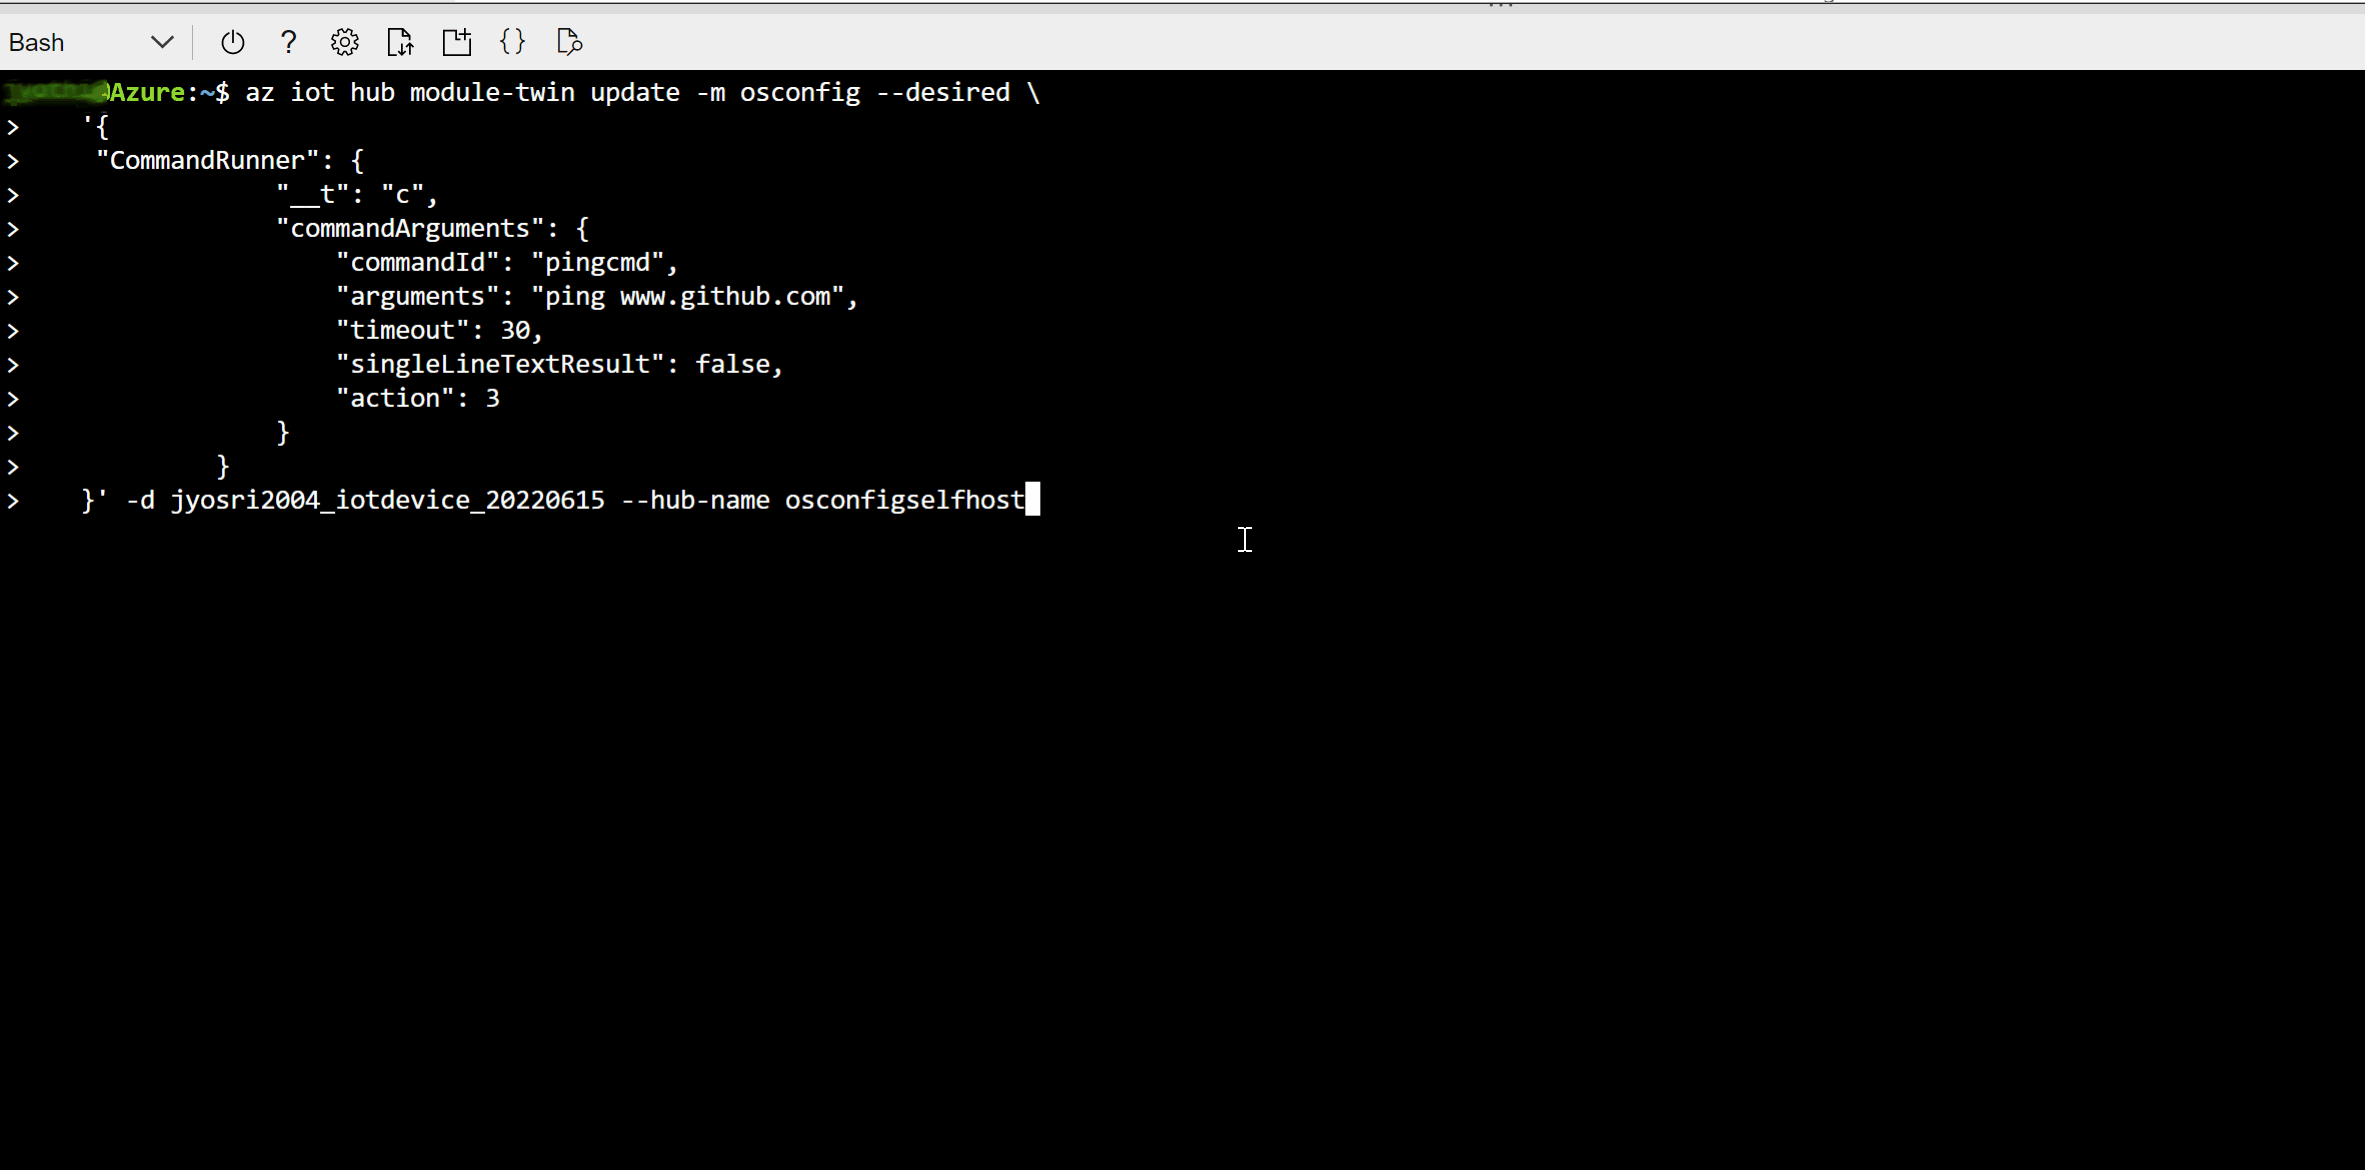 Captura de pantalla que muestra cómo actualizar el gemelo OSConfig para ejecutar un comando ping en un único dispositivo mediante Bash.